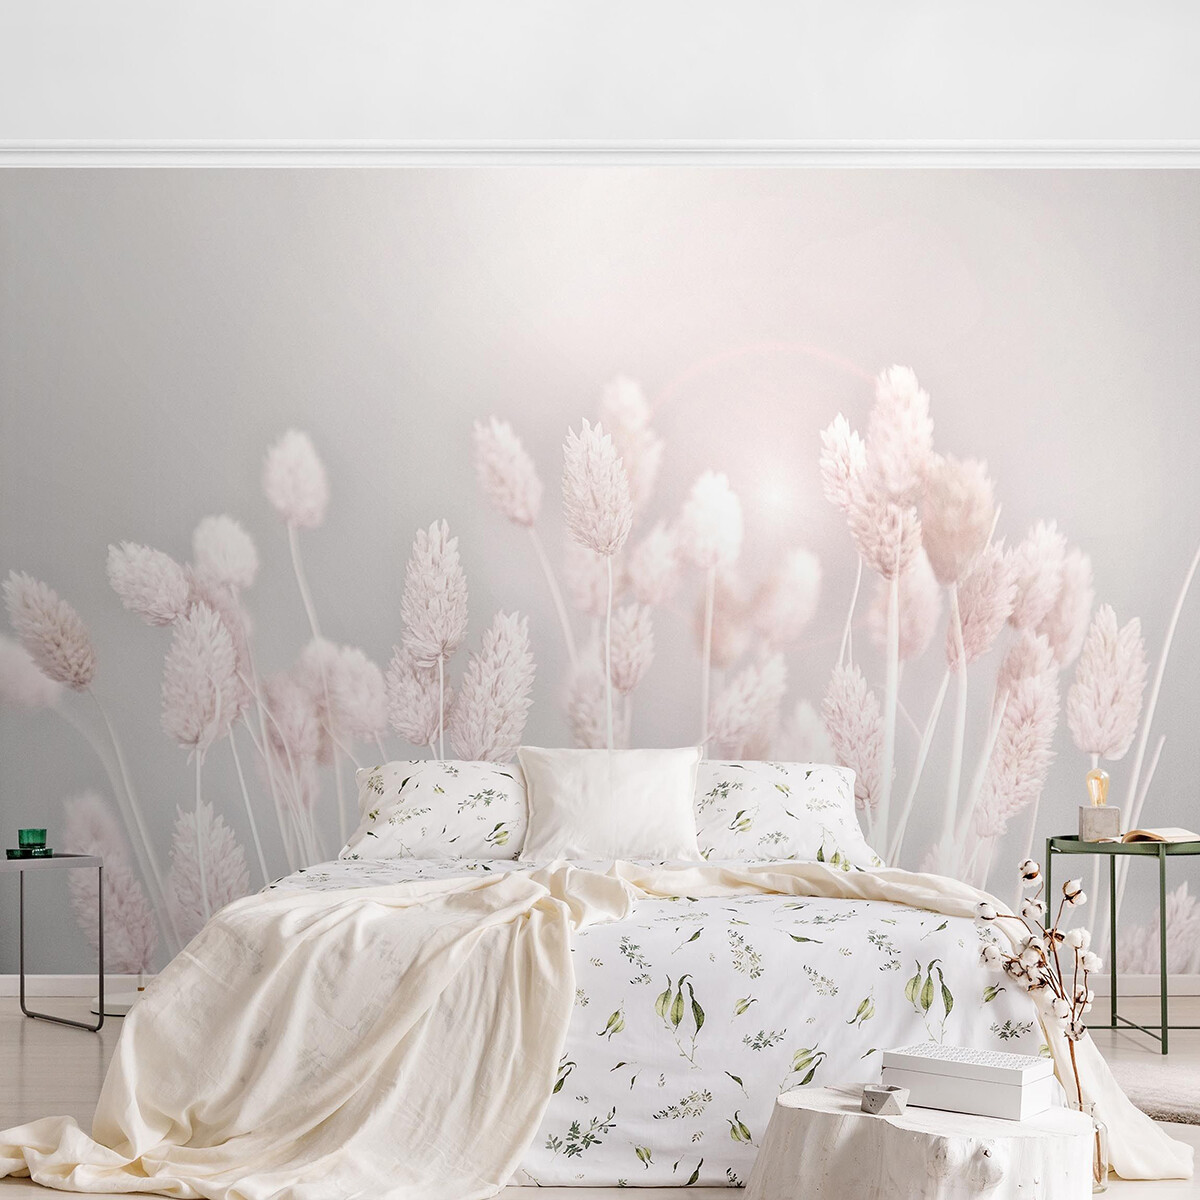 Tapete Schlafzimmer romantisch – Helles Gras im Sonnenlicht